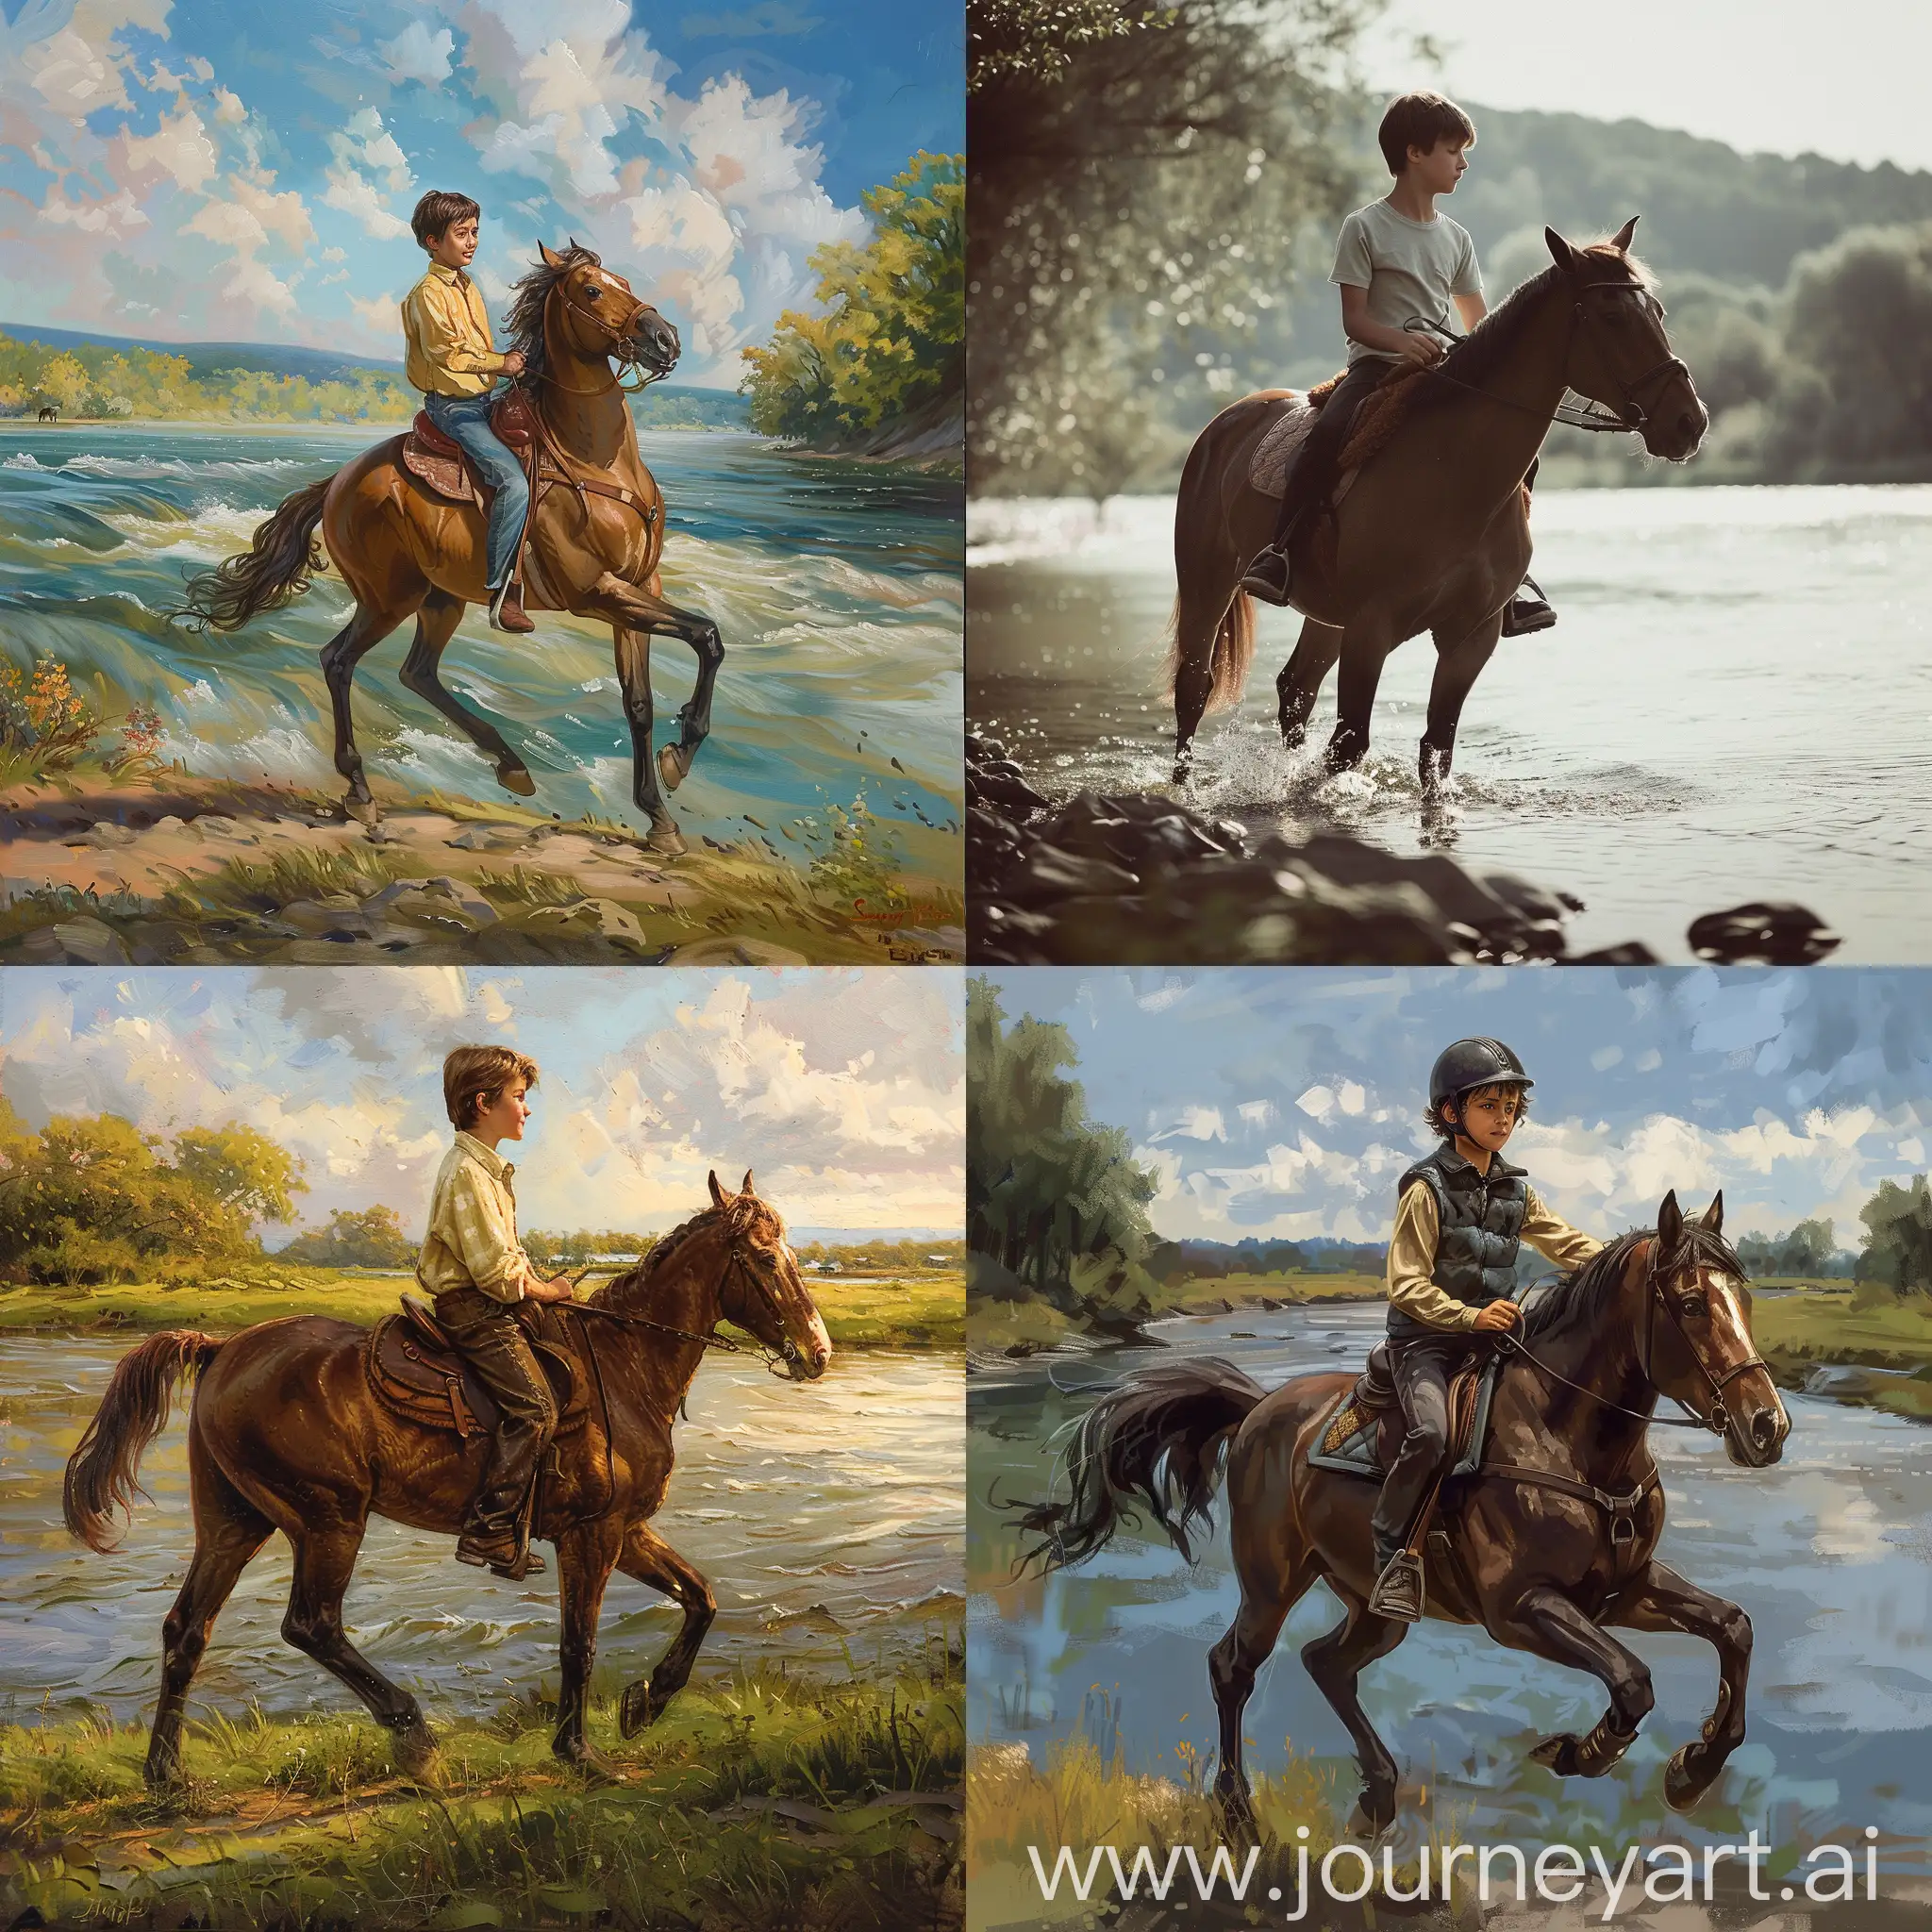 мальчик 12лет скачет на коне, на фоне реки,